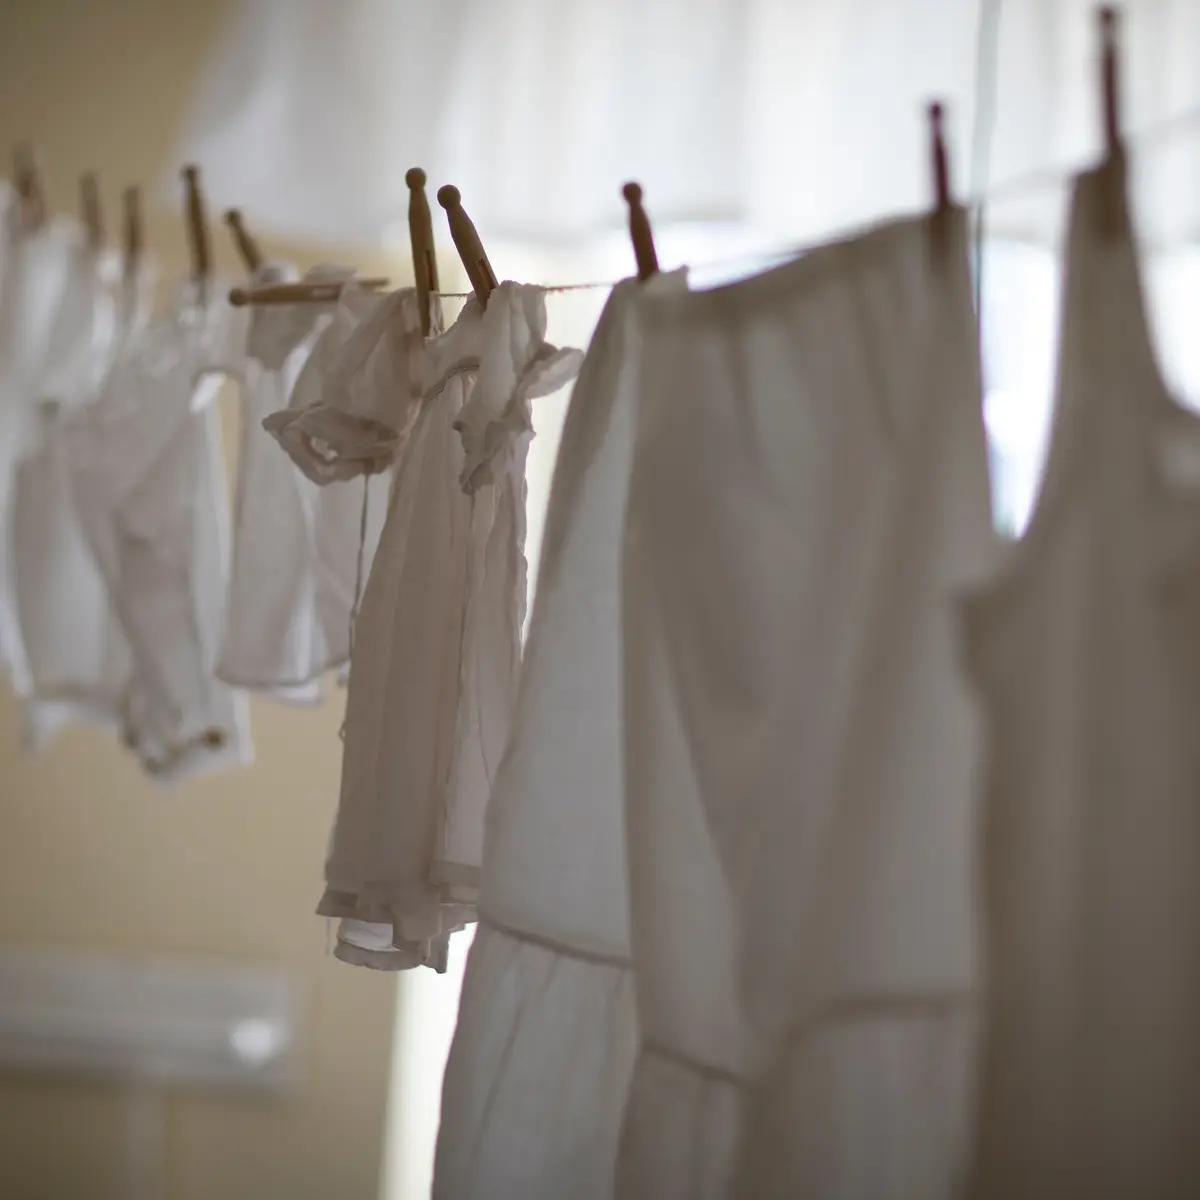 Trucos para secar la ropa sin secadora